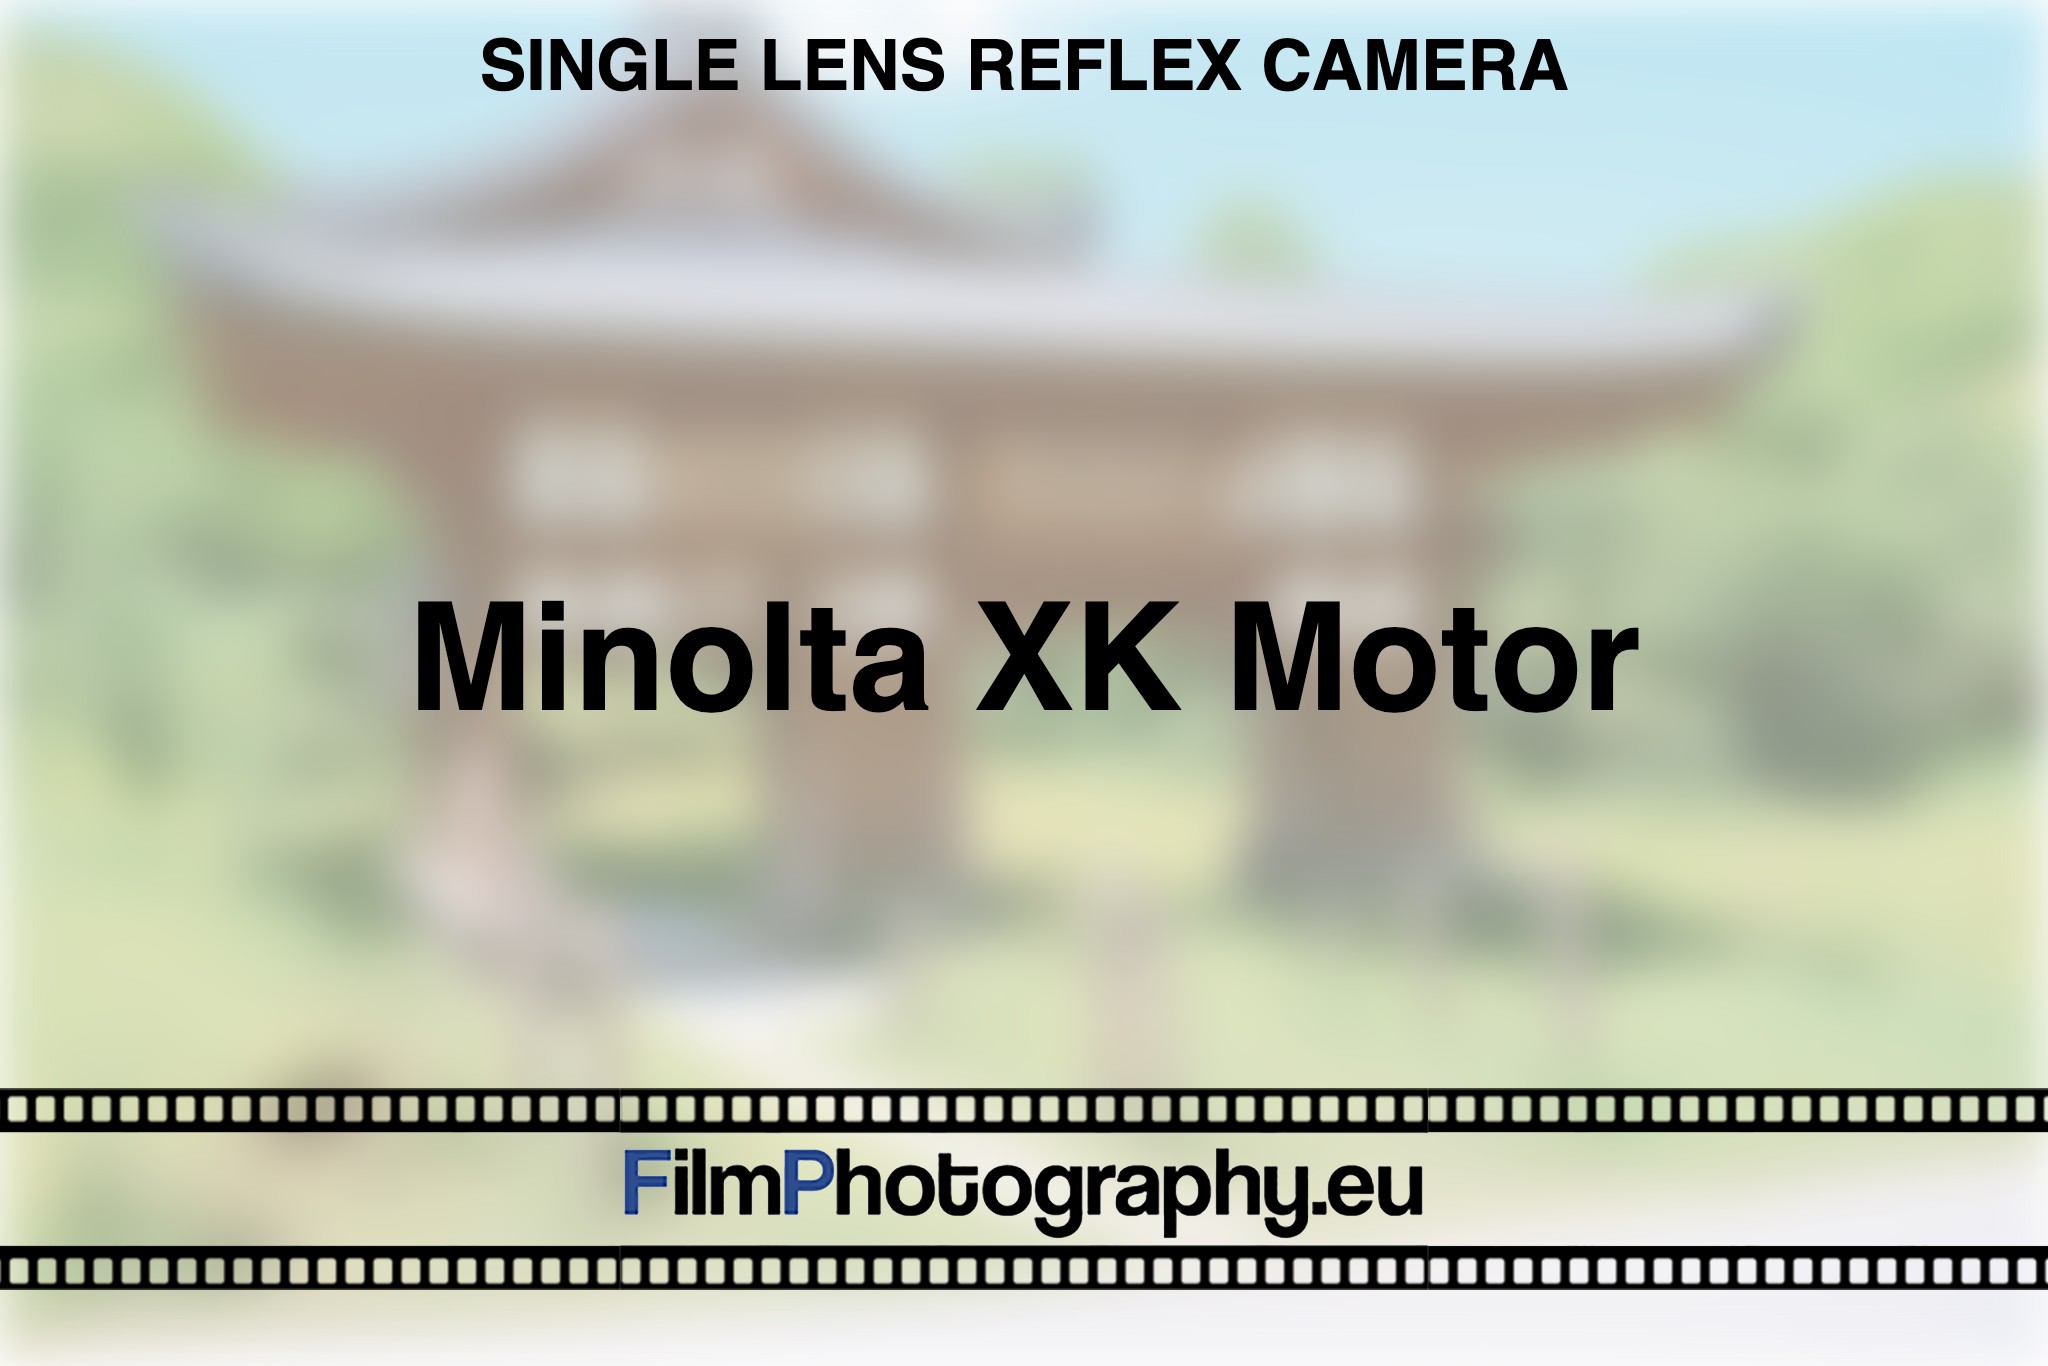 minolta-xk-motor-single-lens-reflex-camera-bnv